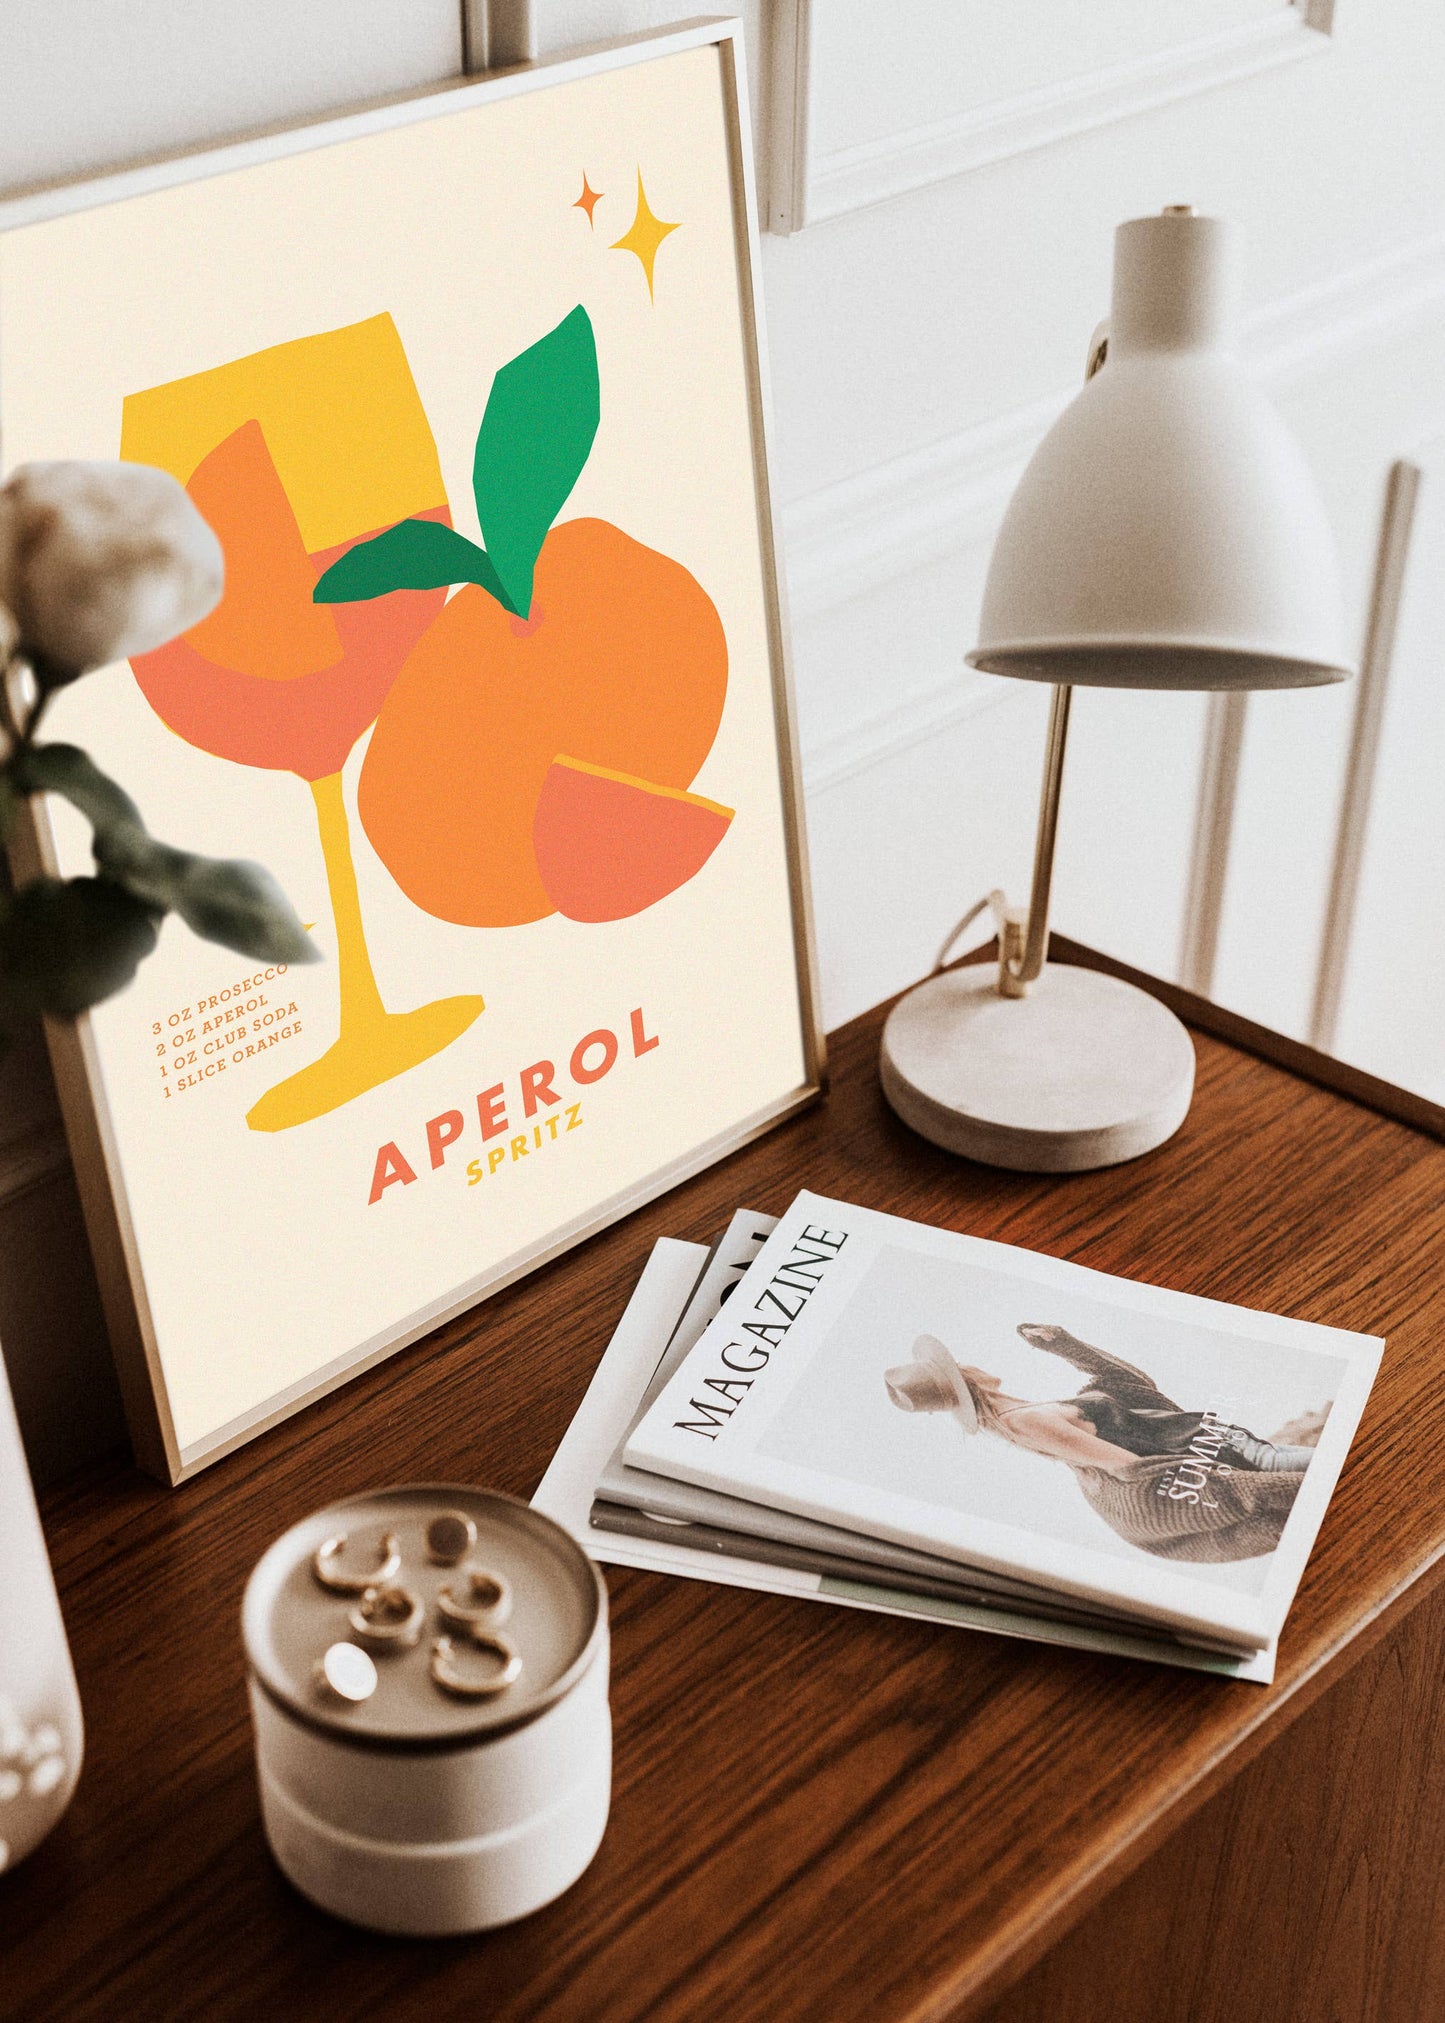 Aperol Cocktail Print